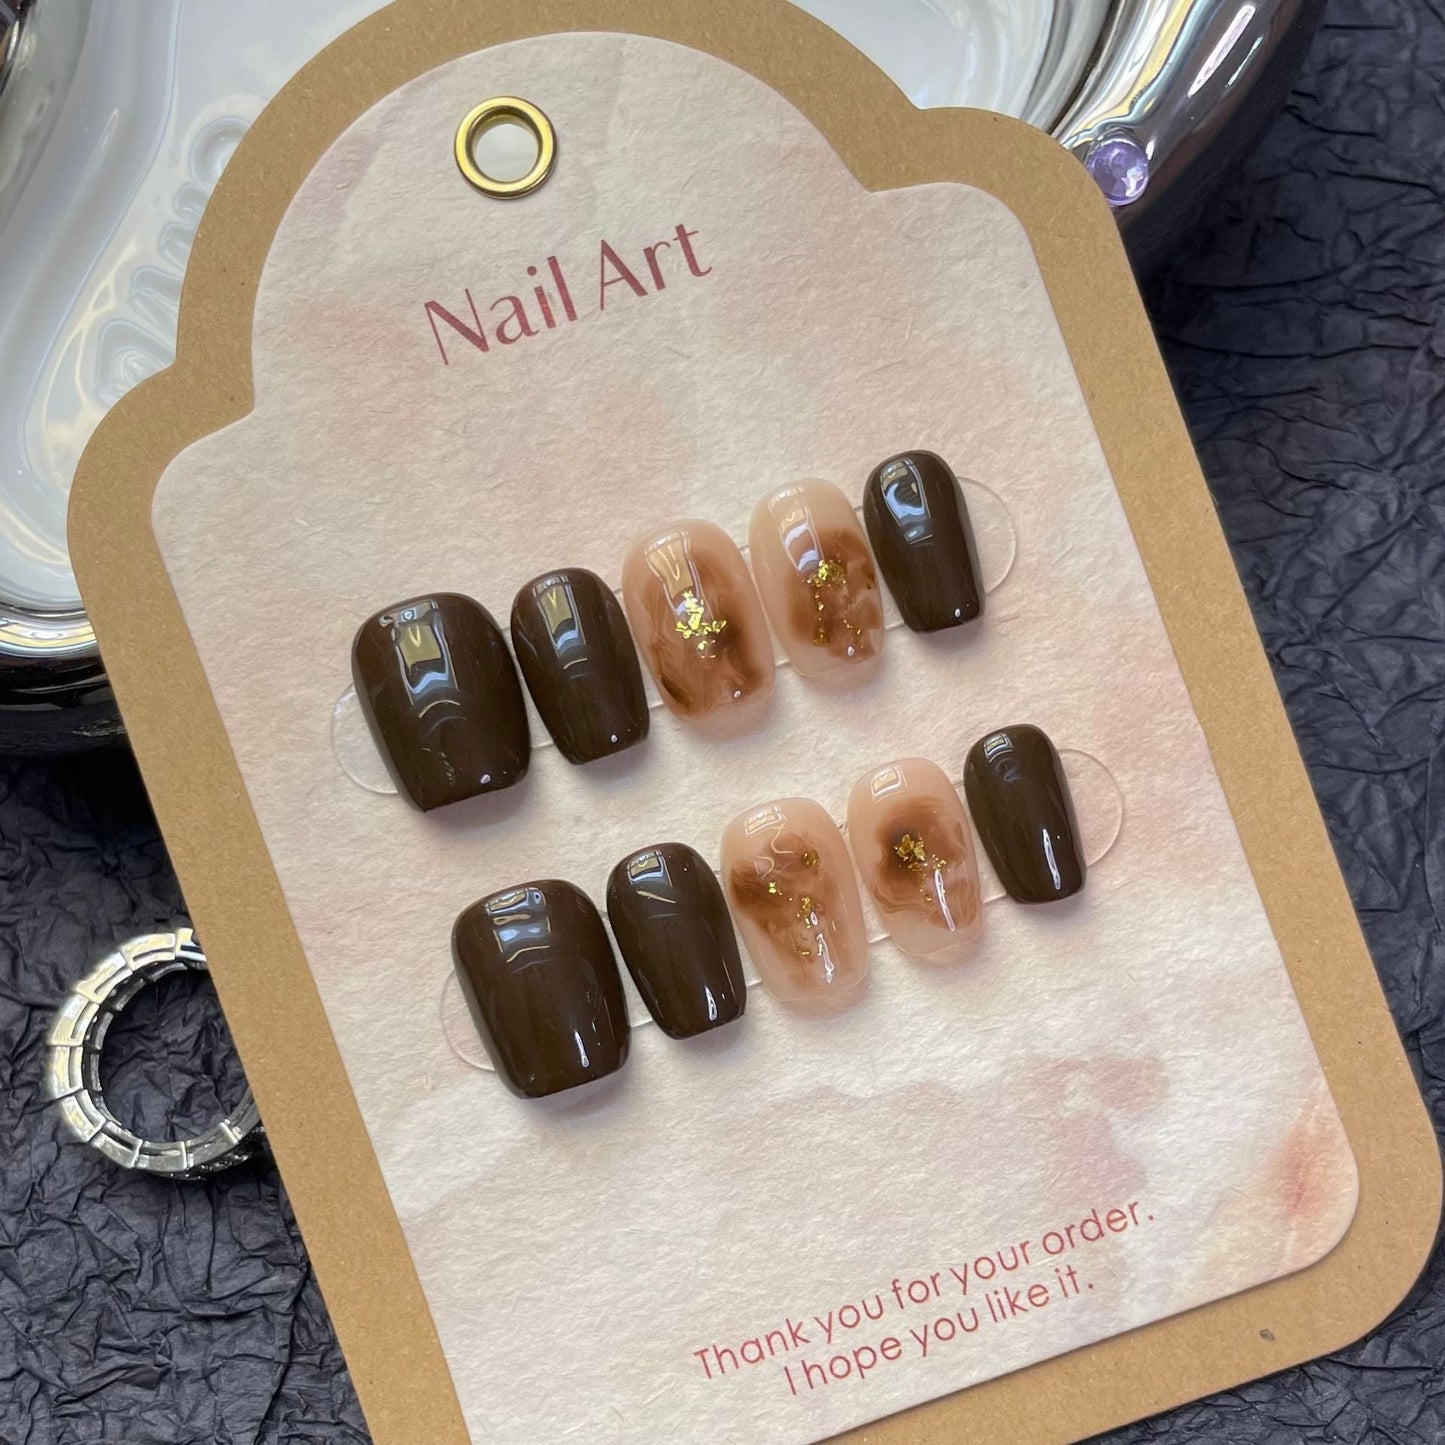 1249 Maillard style press on nails 100% handmade false nails brown